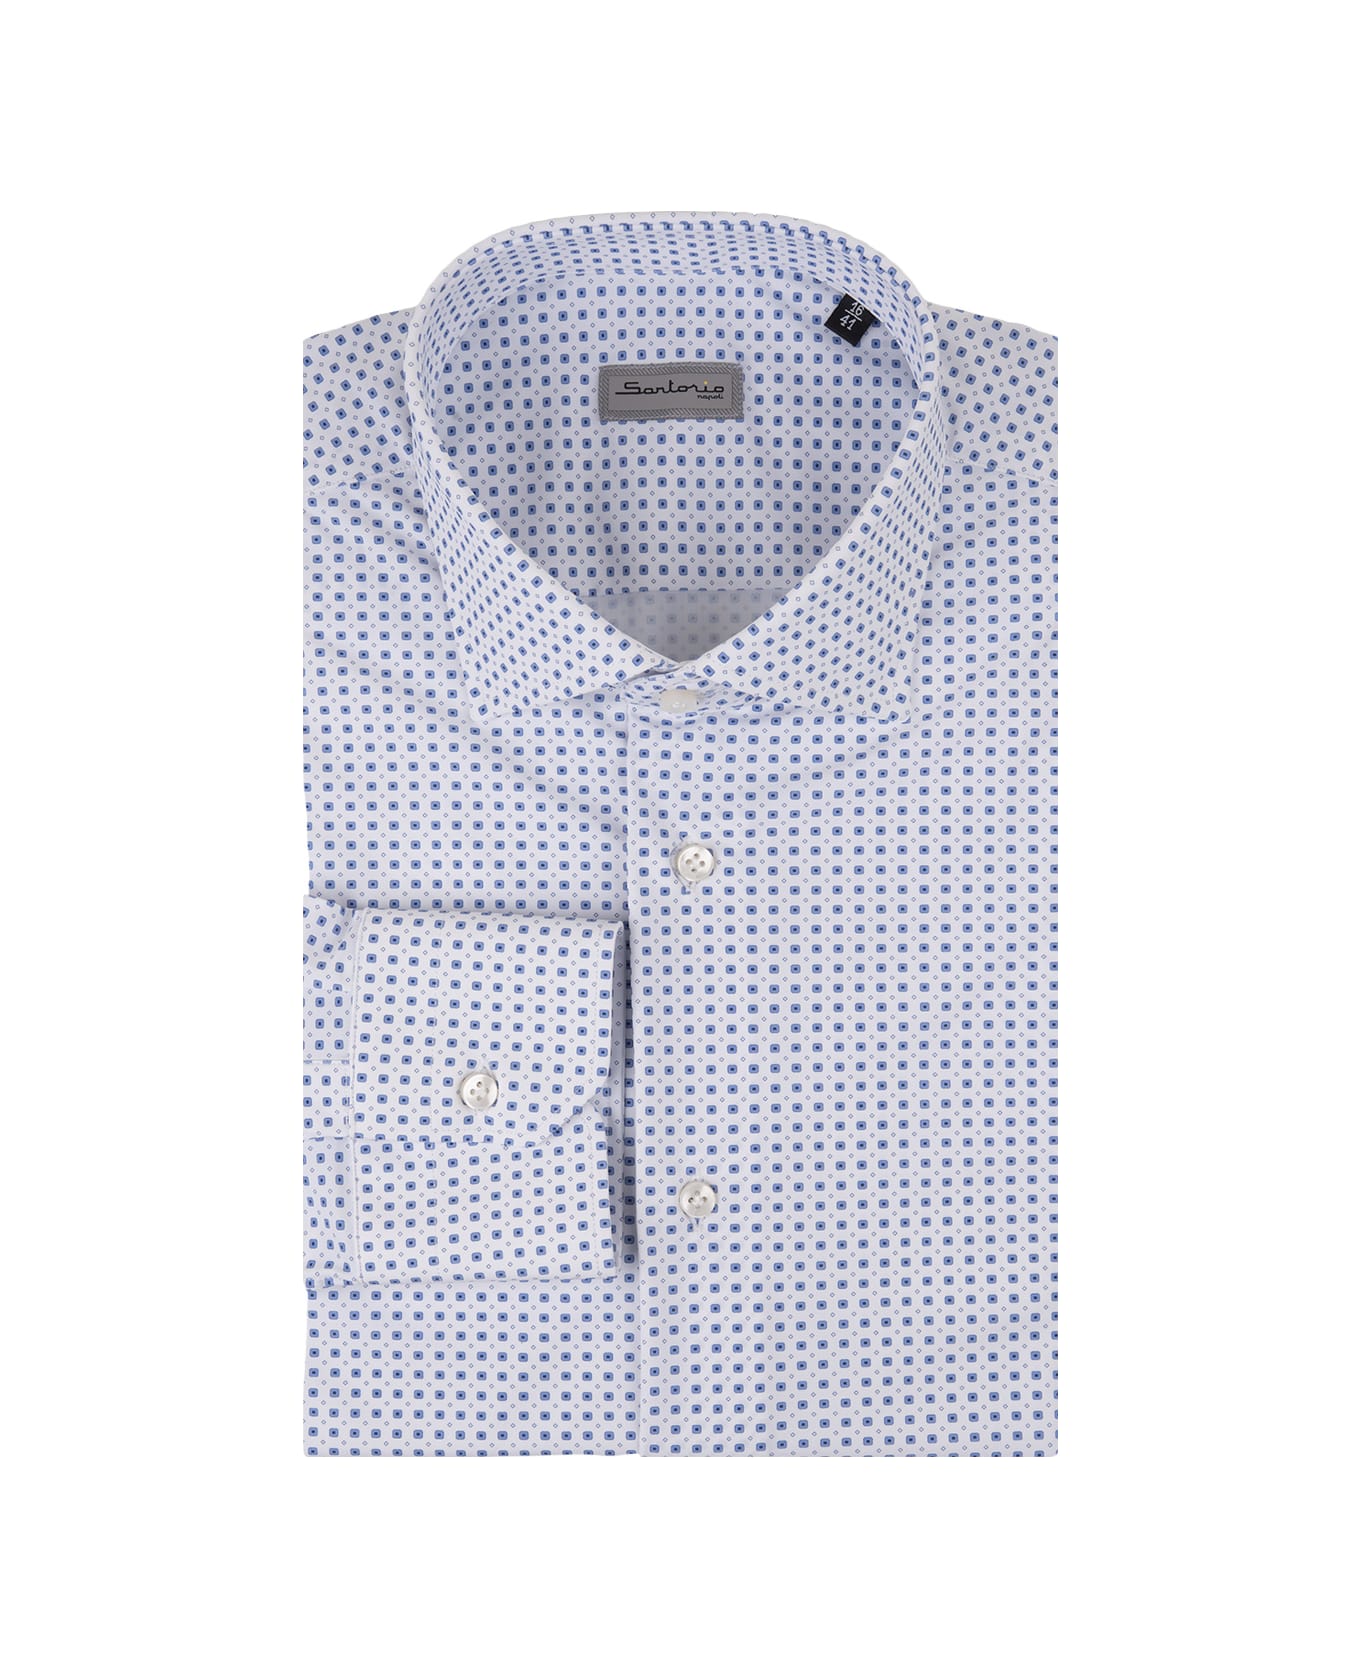 Sartorio Napoli White Shirt With Blue Micro Pattern - White シャツ